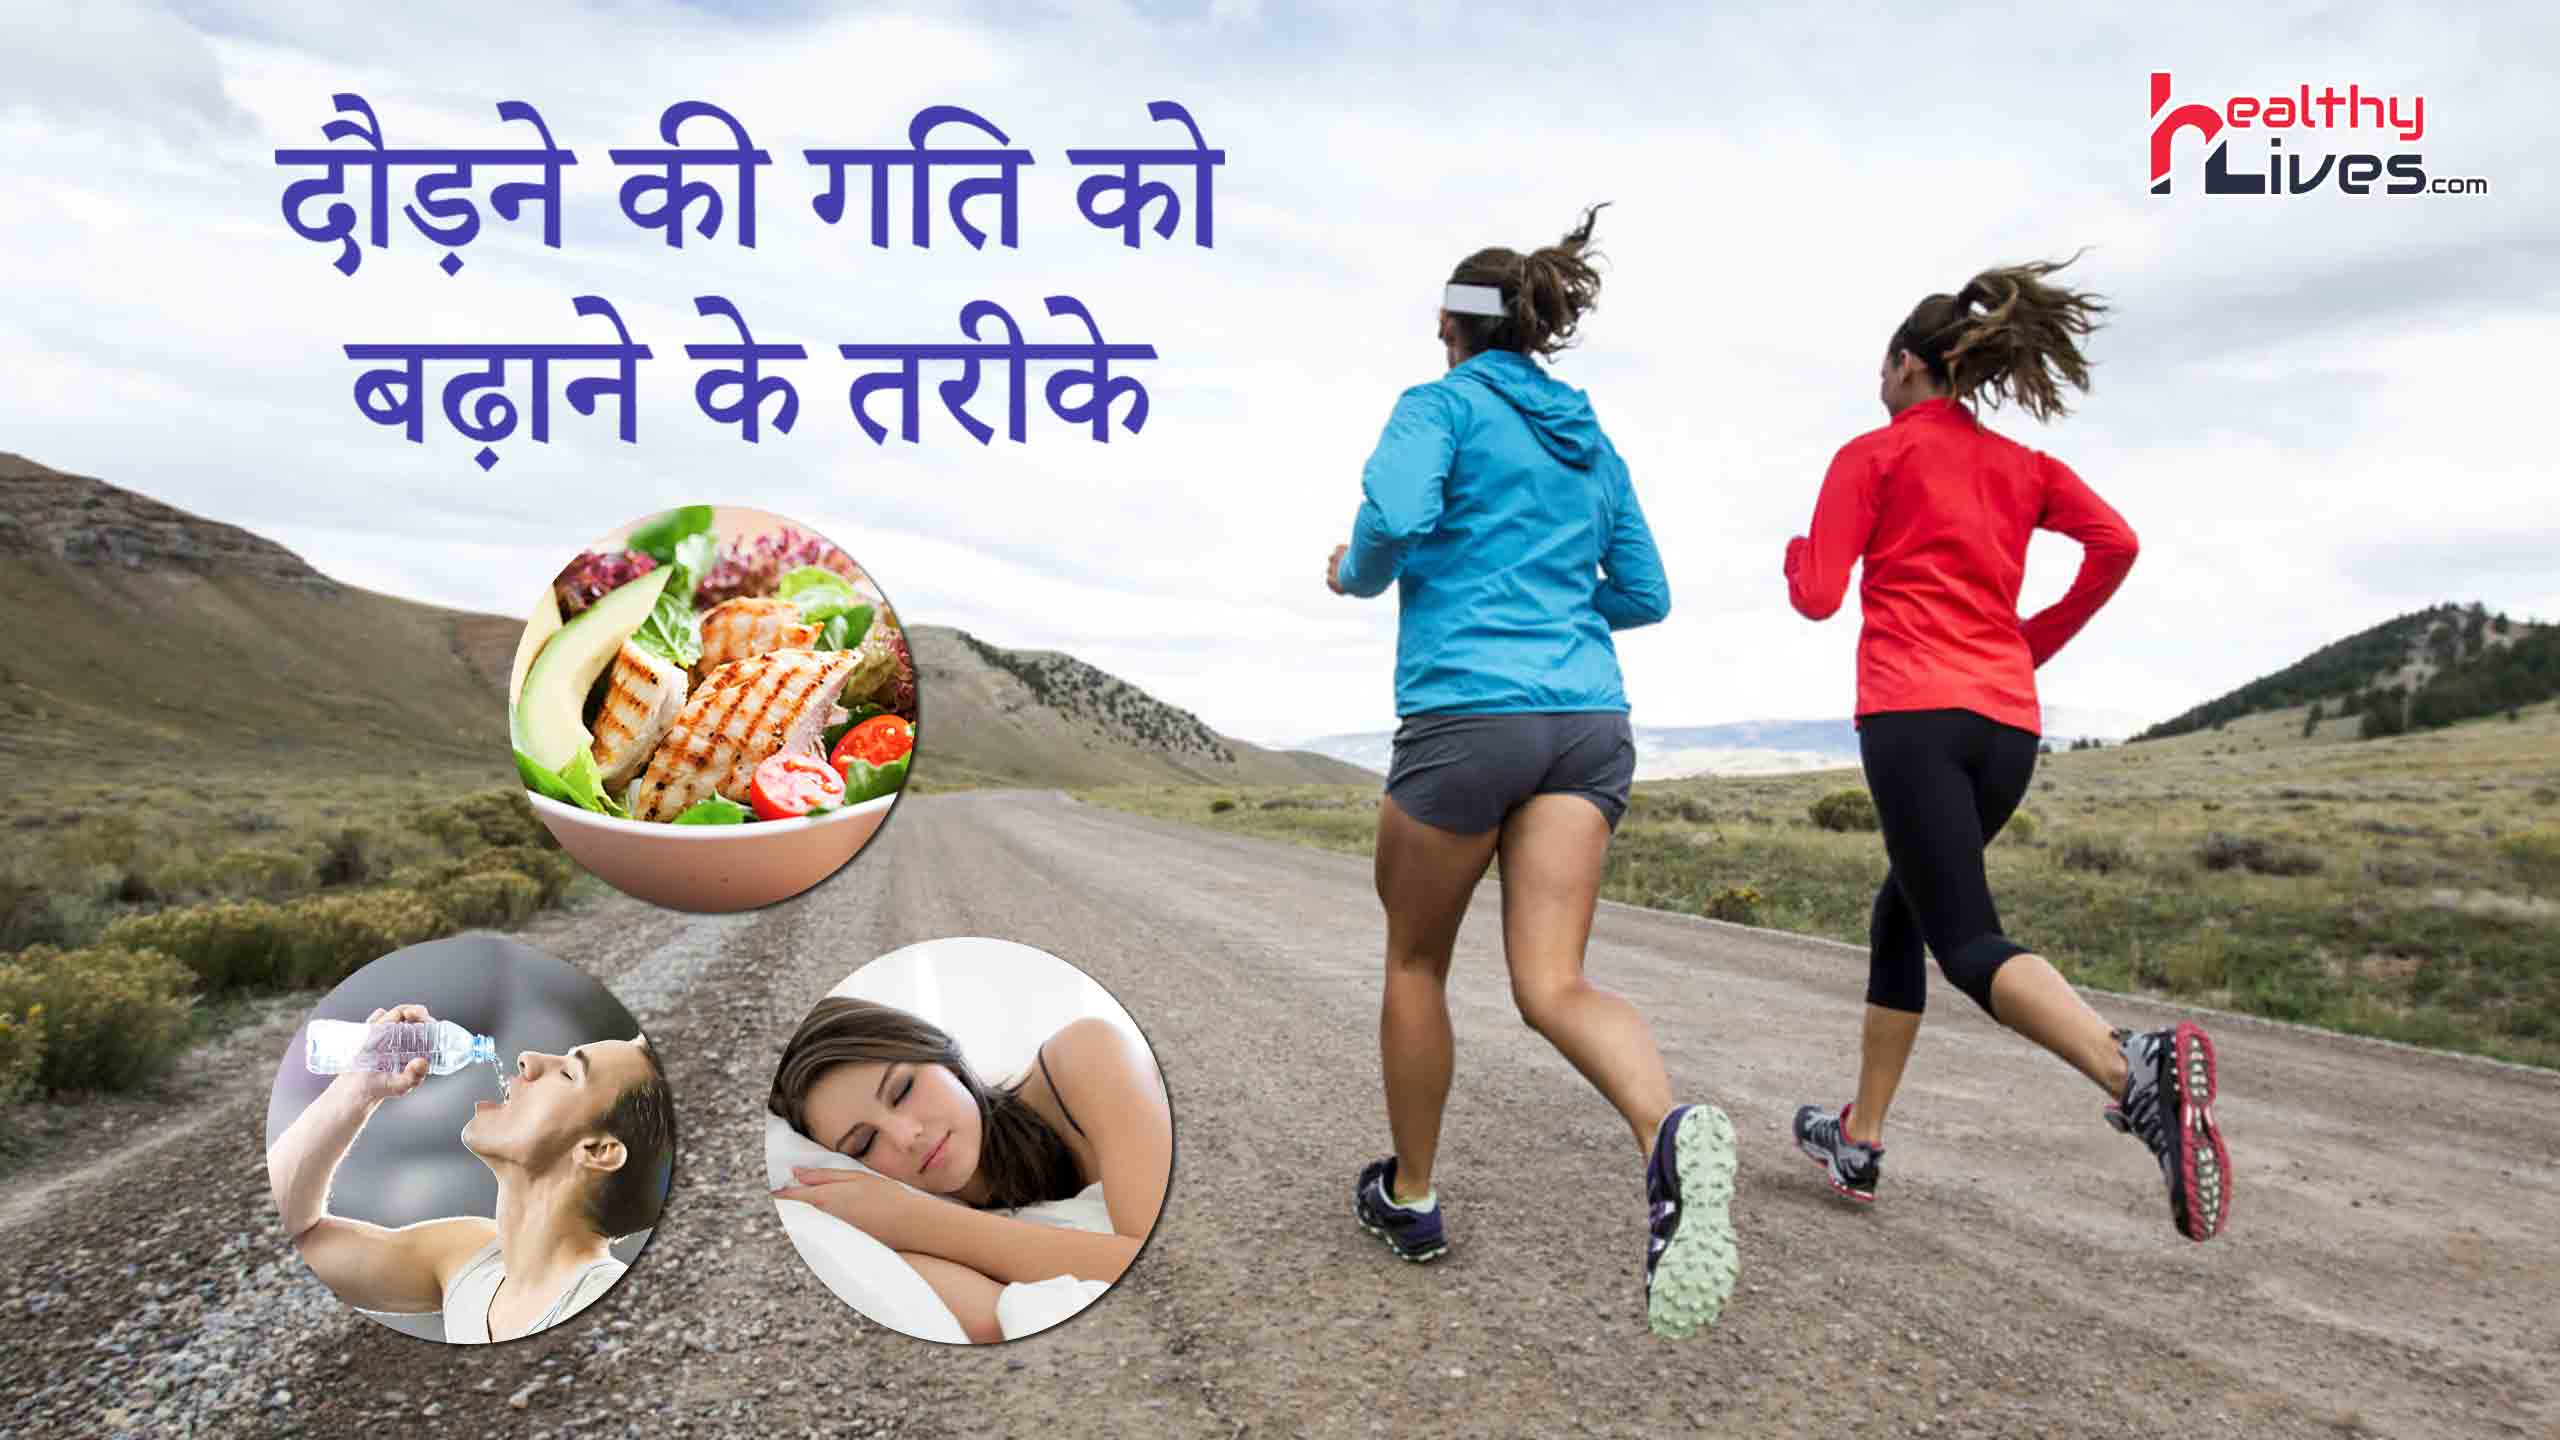 5 KM Running Tips in Hindi: दौड़ना है लाभदायक, ऐसे बढ़ाएं अपनी स्पीड